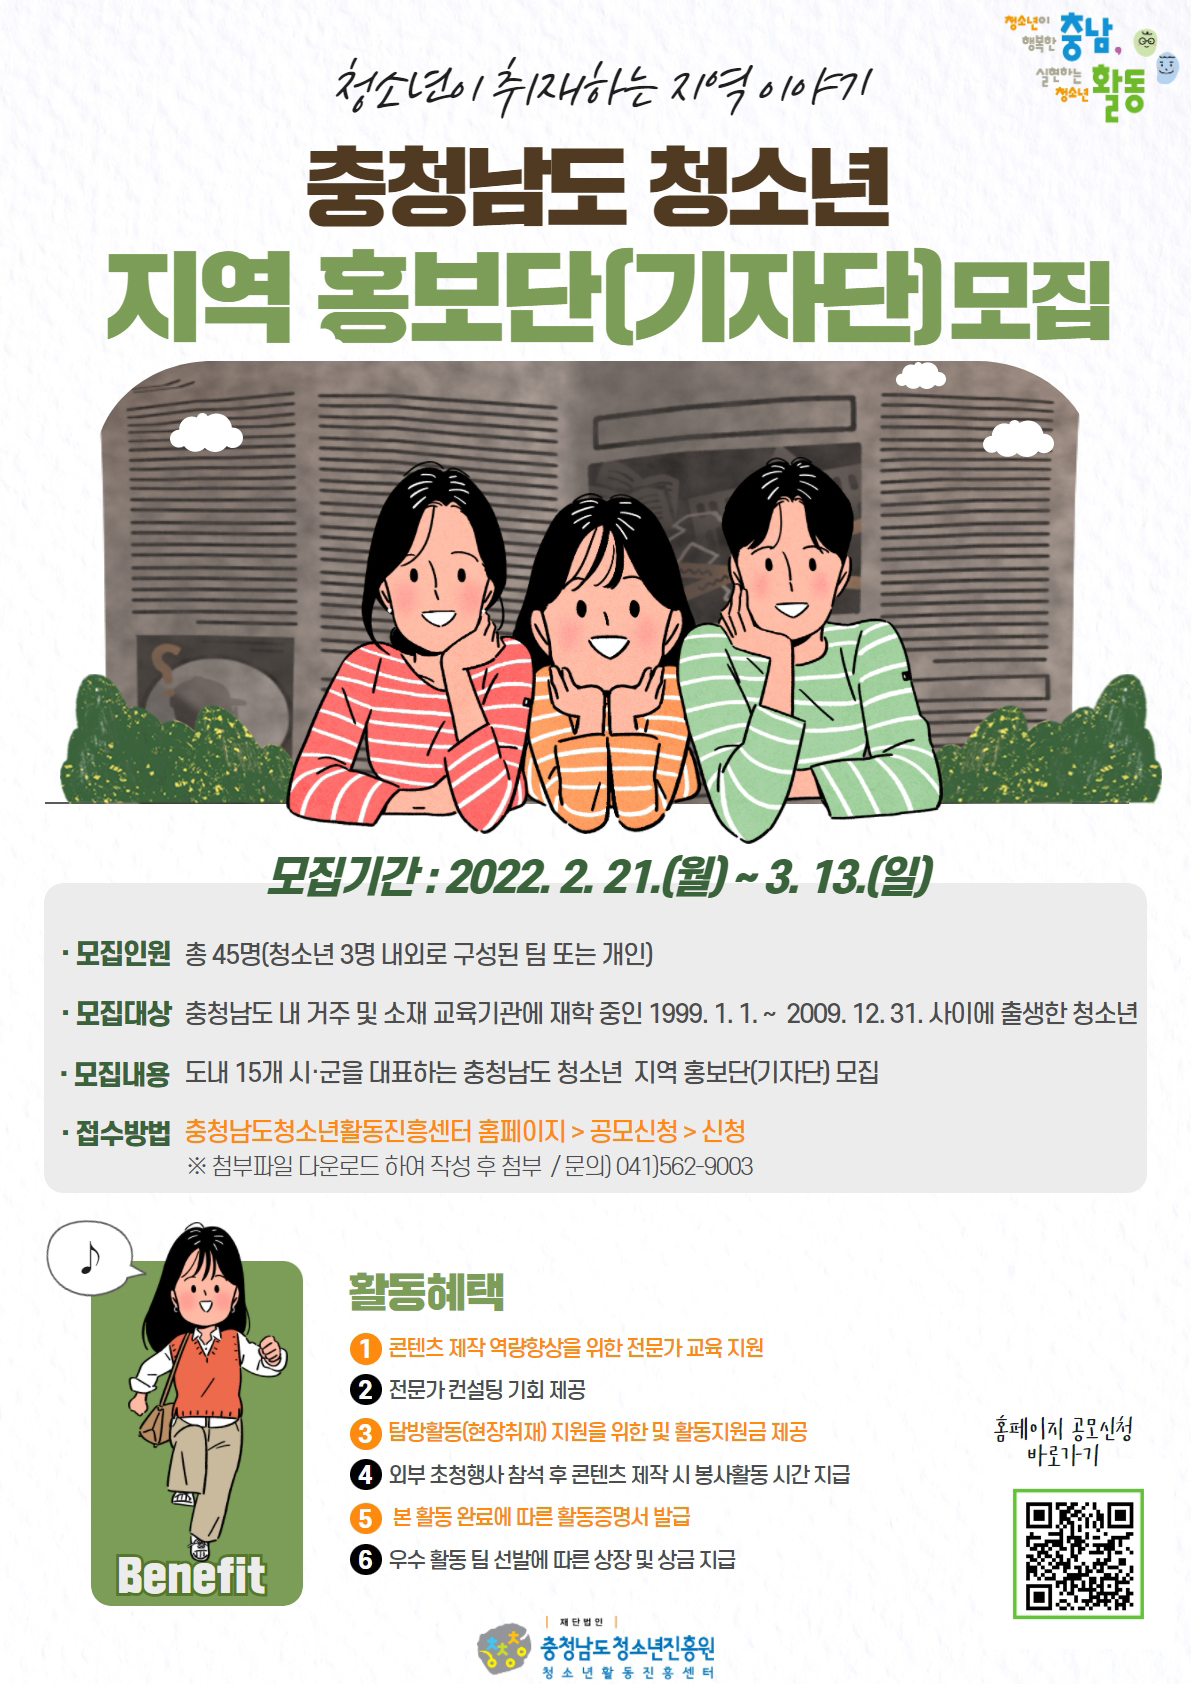 [안내] 2022 충청남도 청소년 지역 홍보단(기자단) 모집 안내